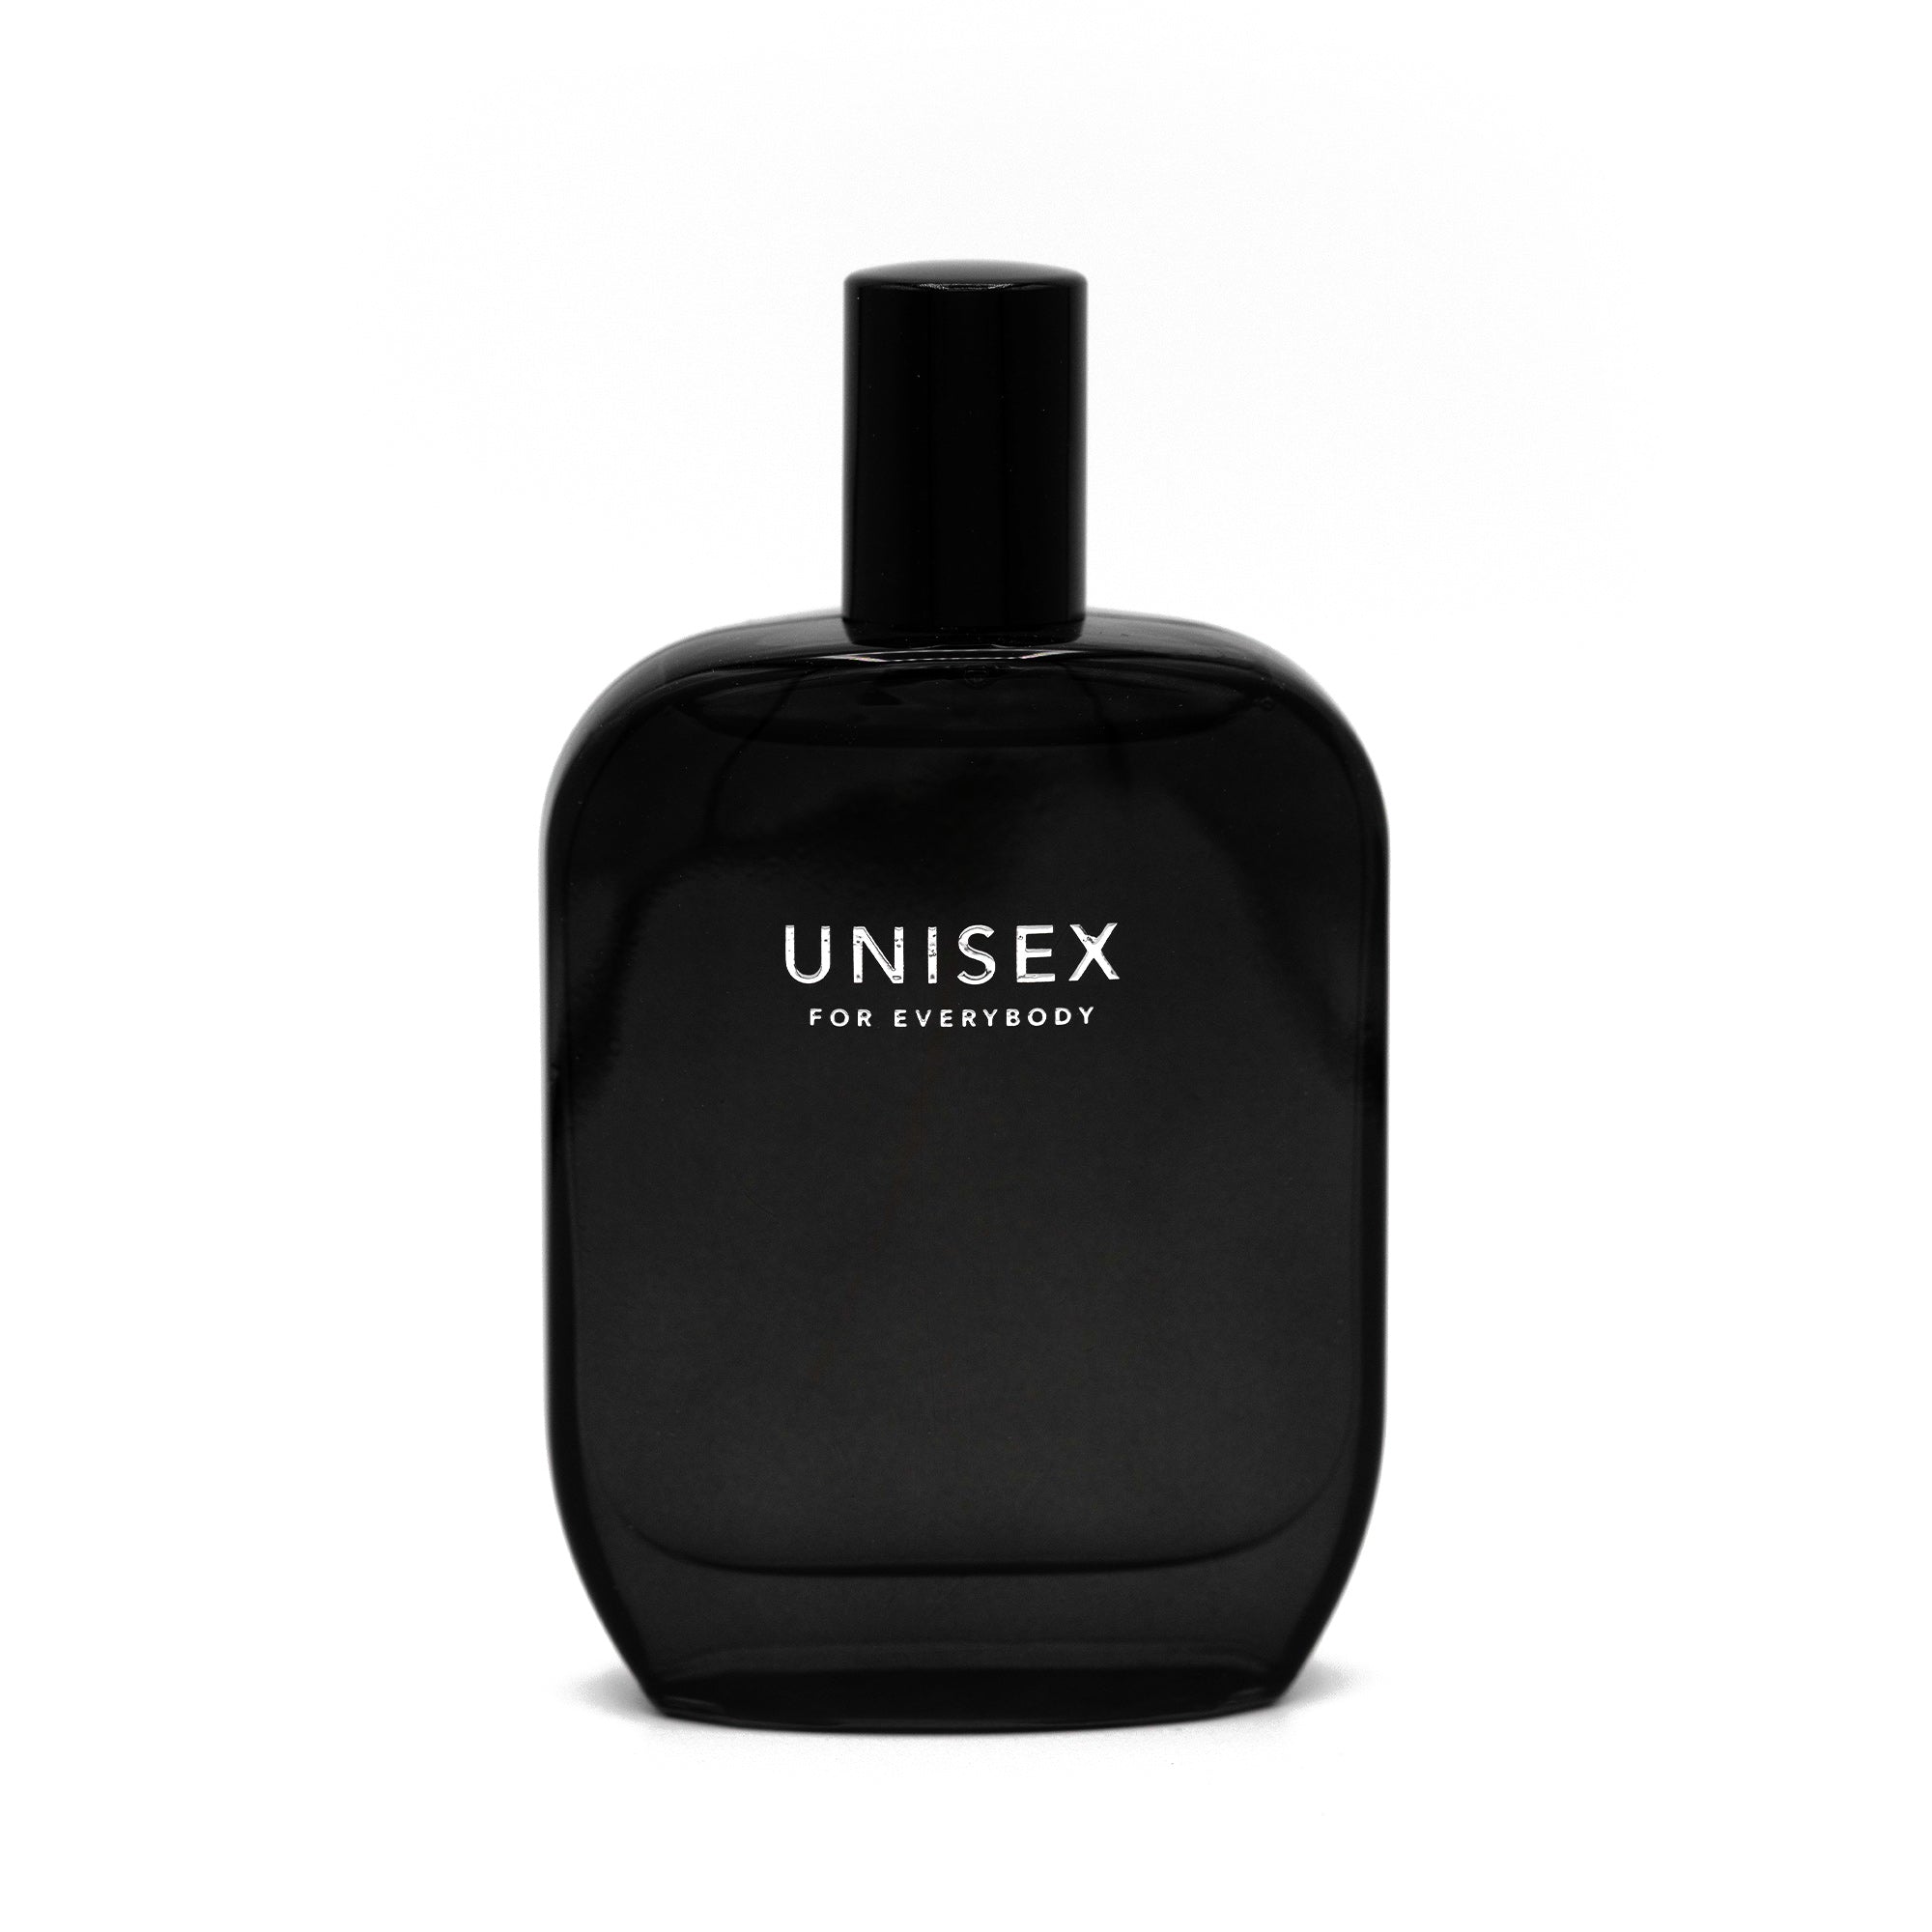 UNISEX for Everybody fragrance bottle 50ml closed cap